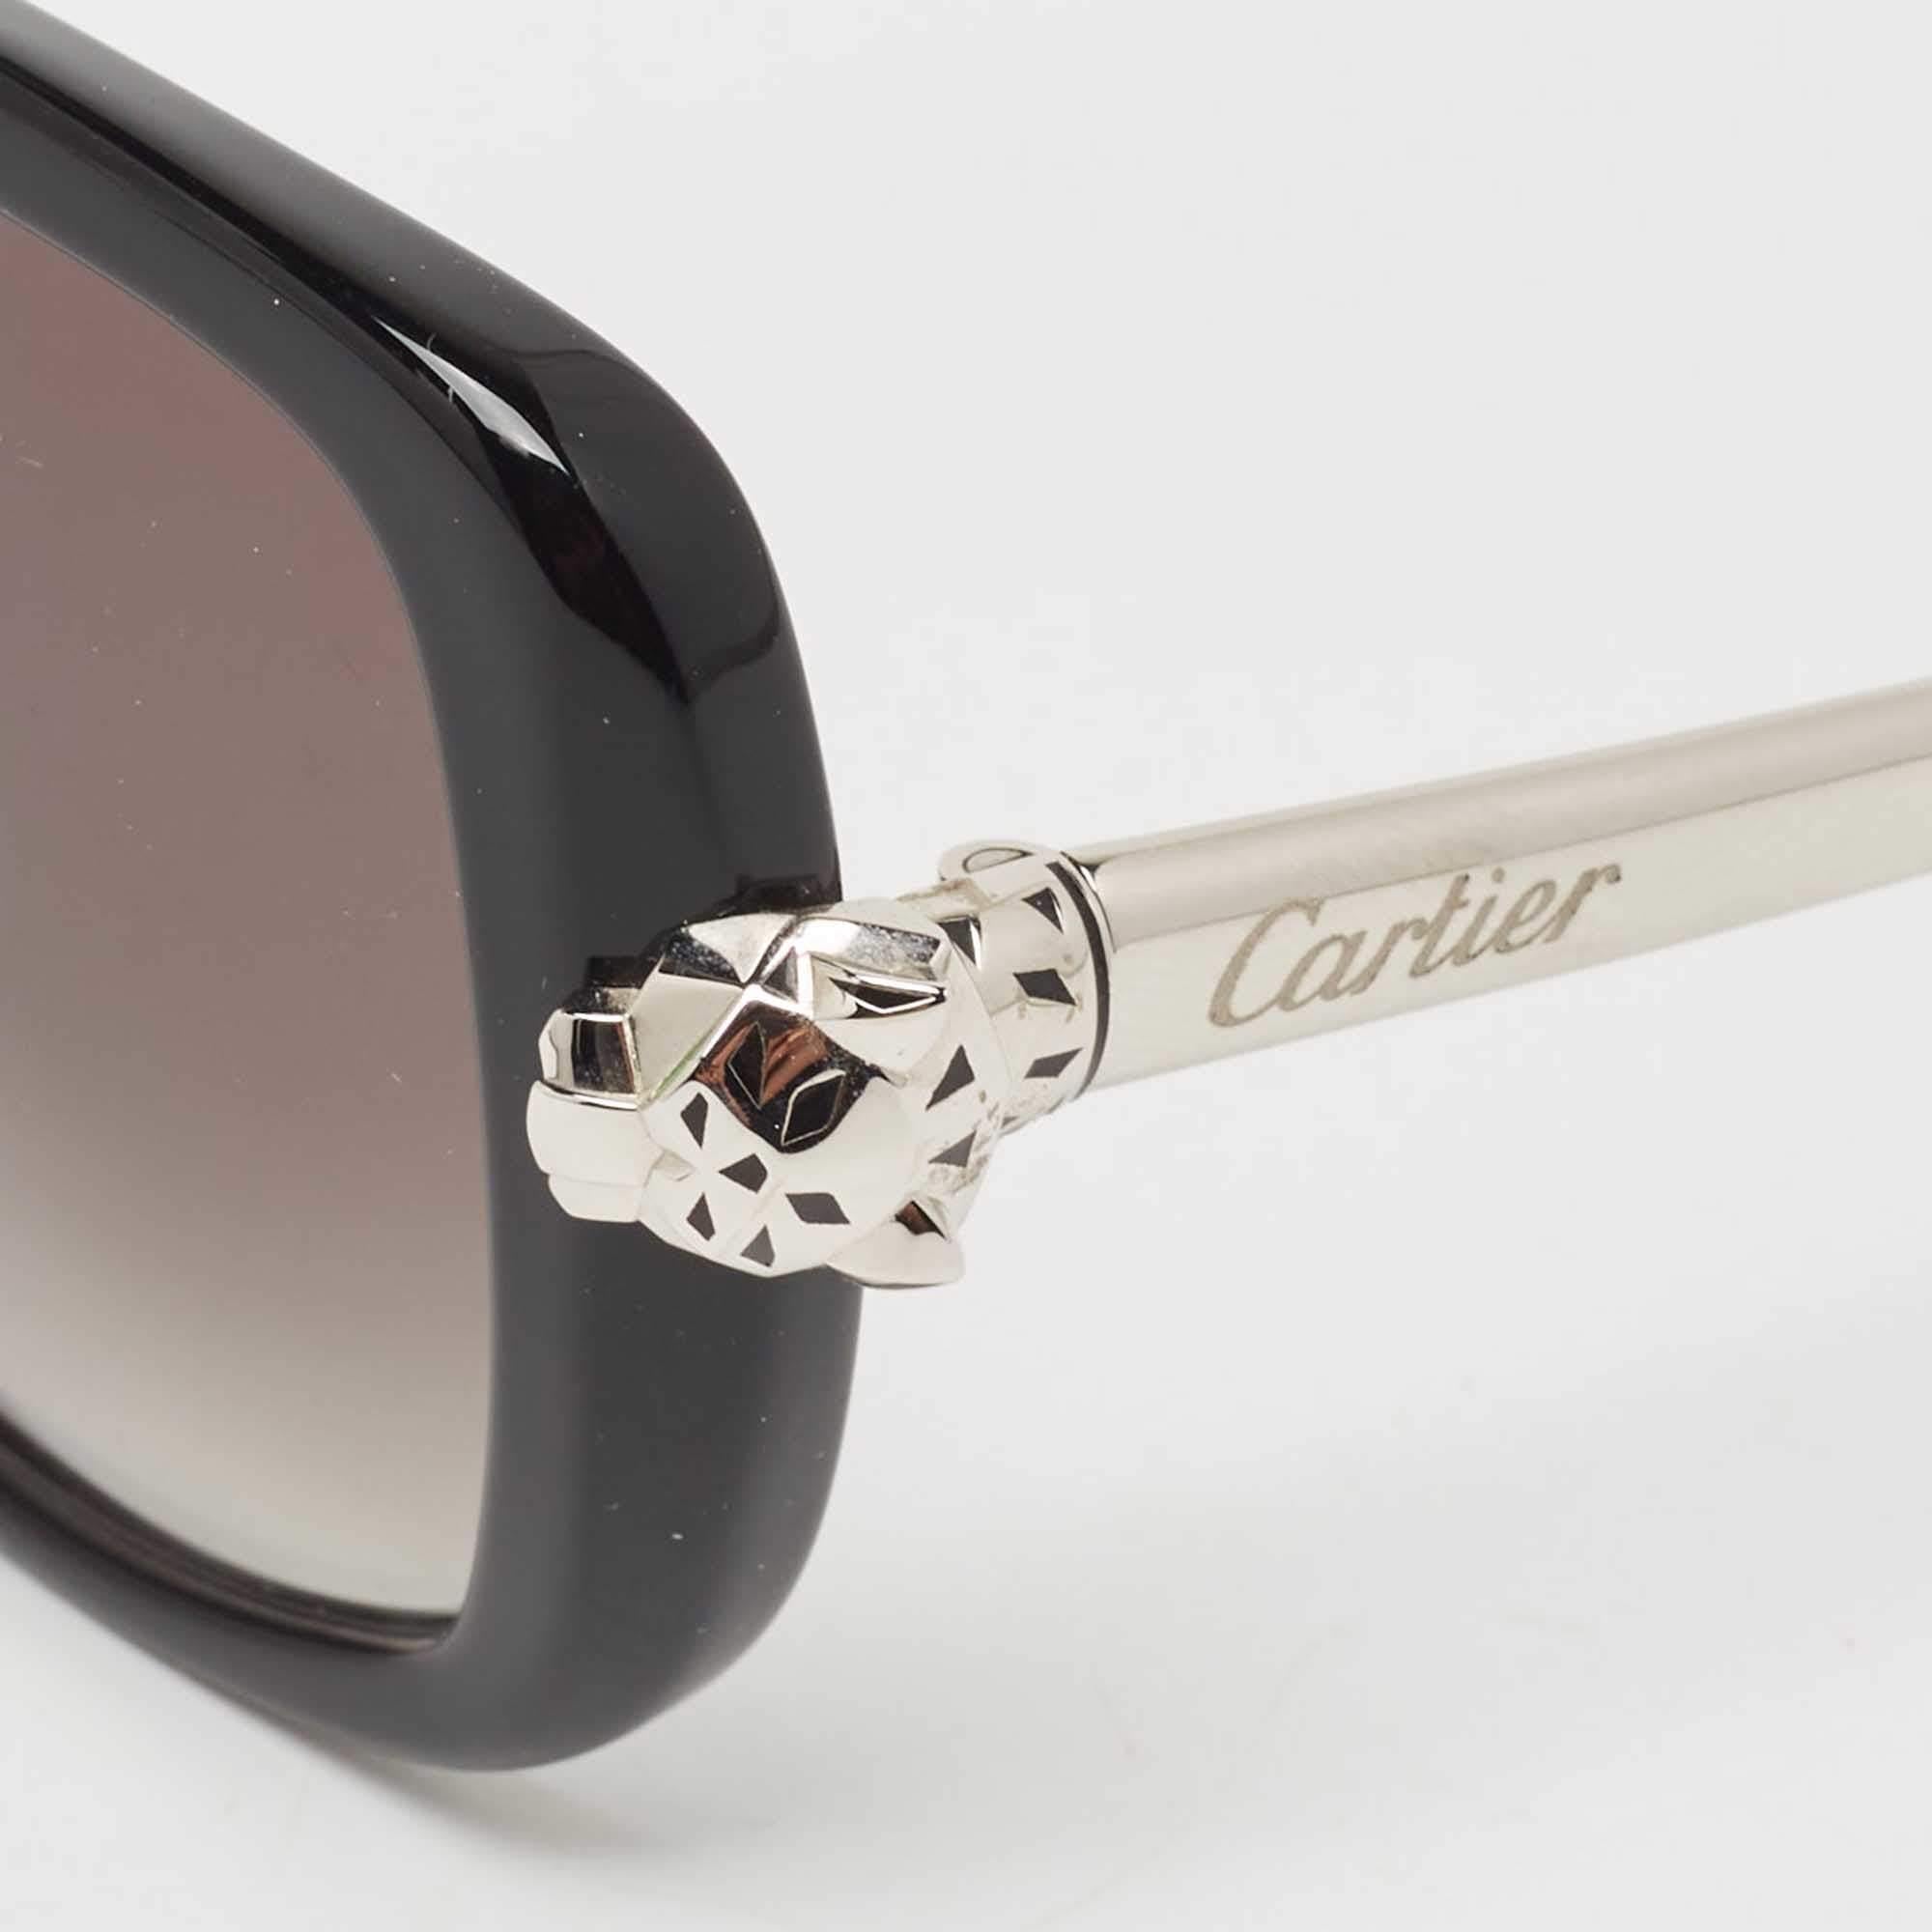 Mit dieser Sonnenbrille von Cartier setzen Sie neue Maßstäbe in Sachen Eyewear. Sorgfältig aus hochwertigen Materialien gefertigt, bieten sie unvergleichlichen Schutz und ein zeitloses Design, das sie zu einem unverzichtbaren Accessoire für